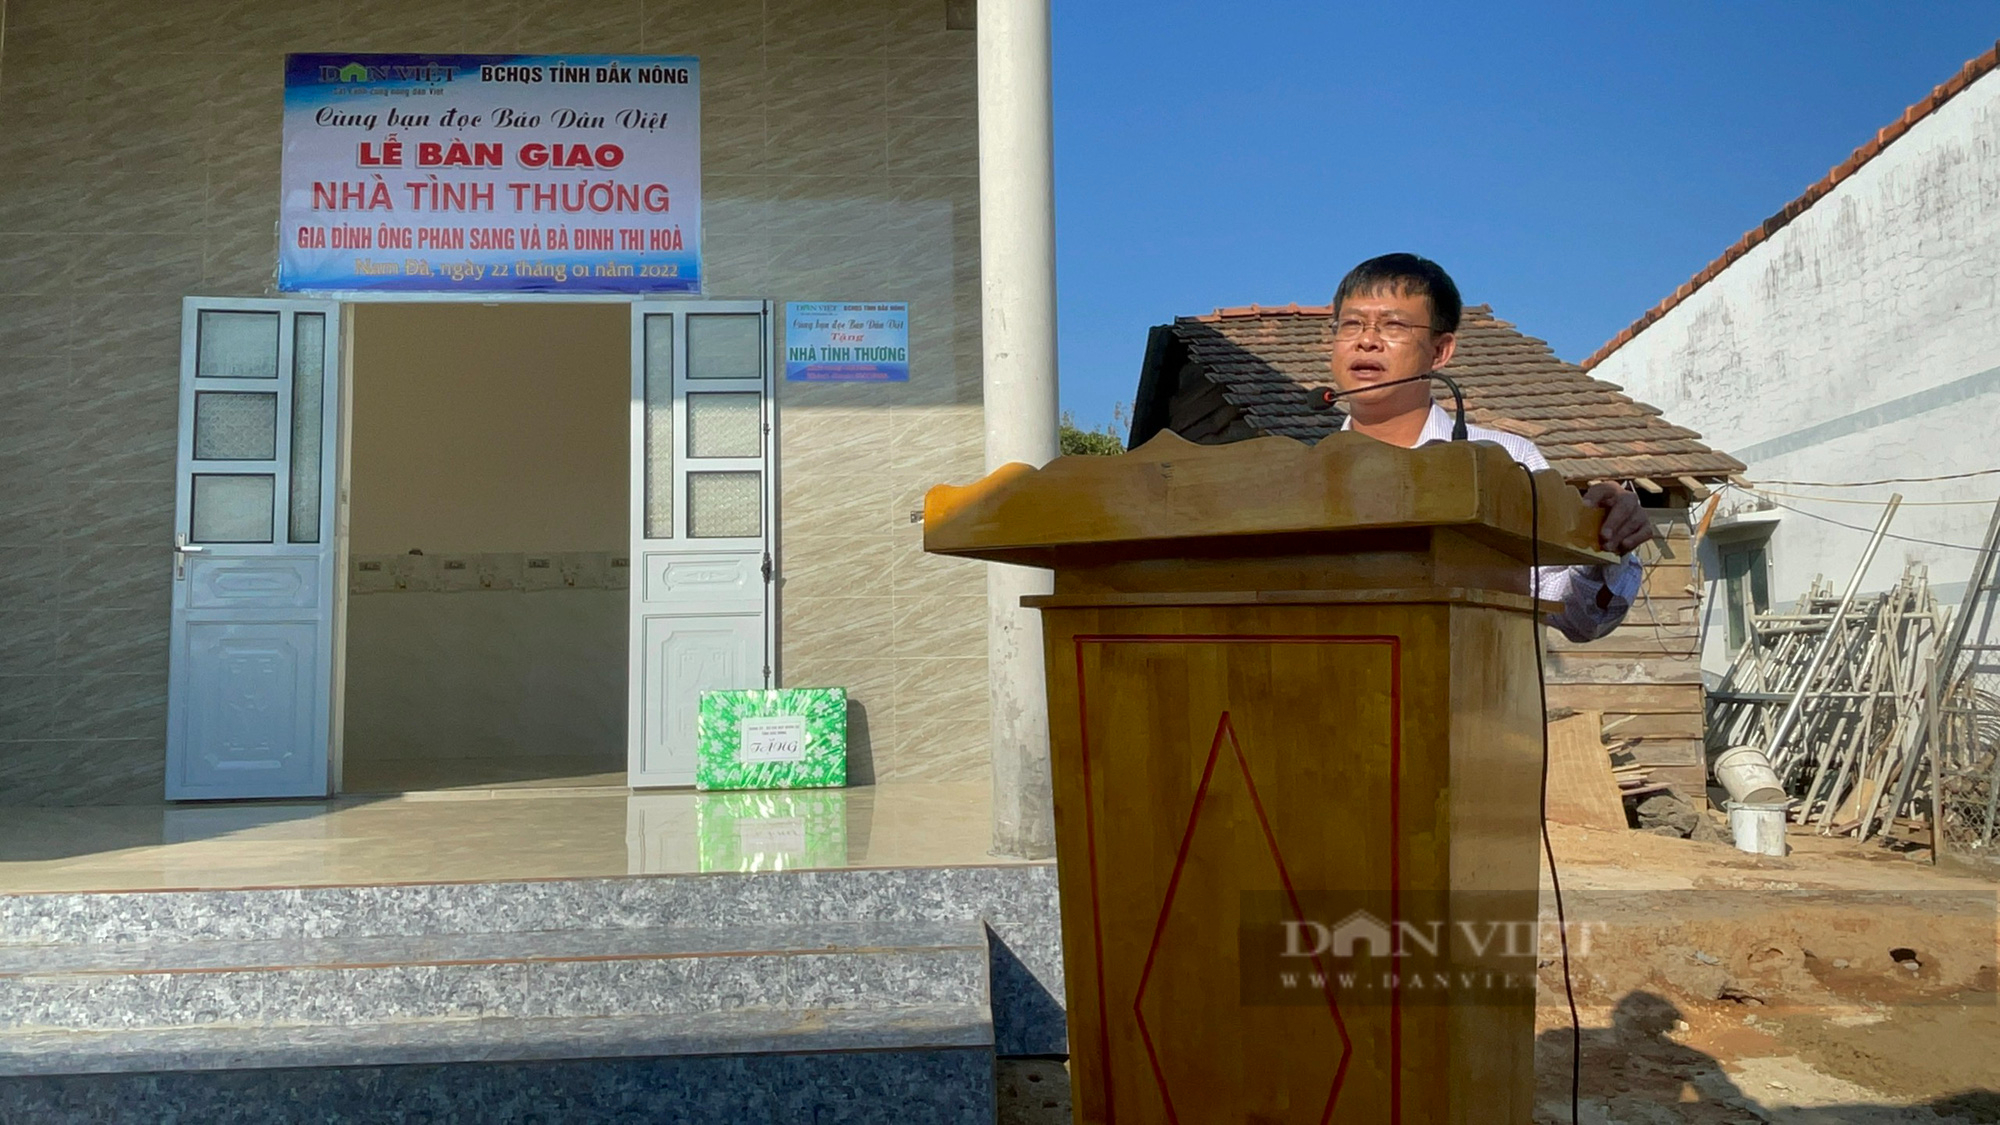 Đăk Nông: Báo Nông thôn ngày nay bàn giao nhà tình thương cho người nghèo ở huyện Krông Nô - Ảnh 2.